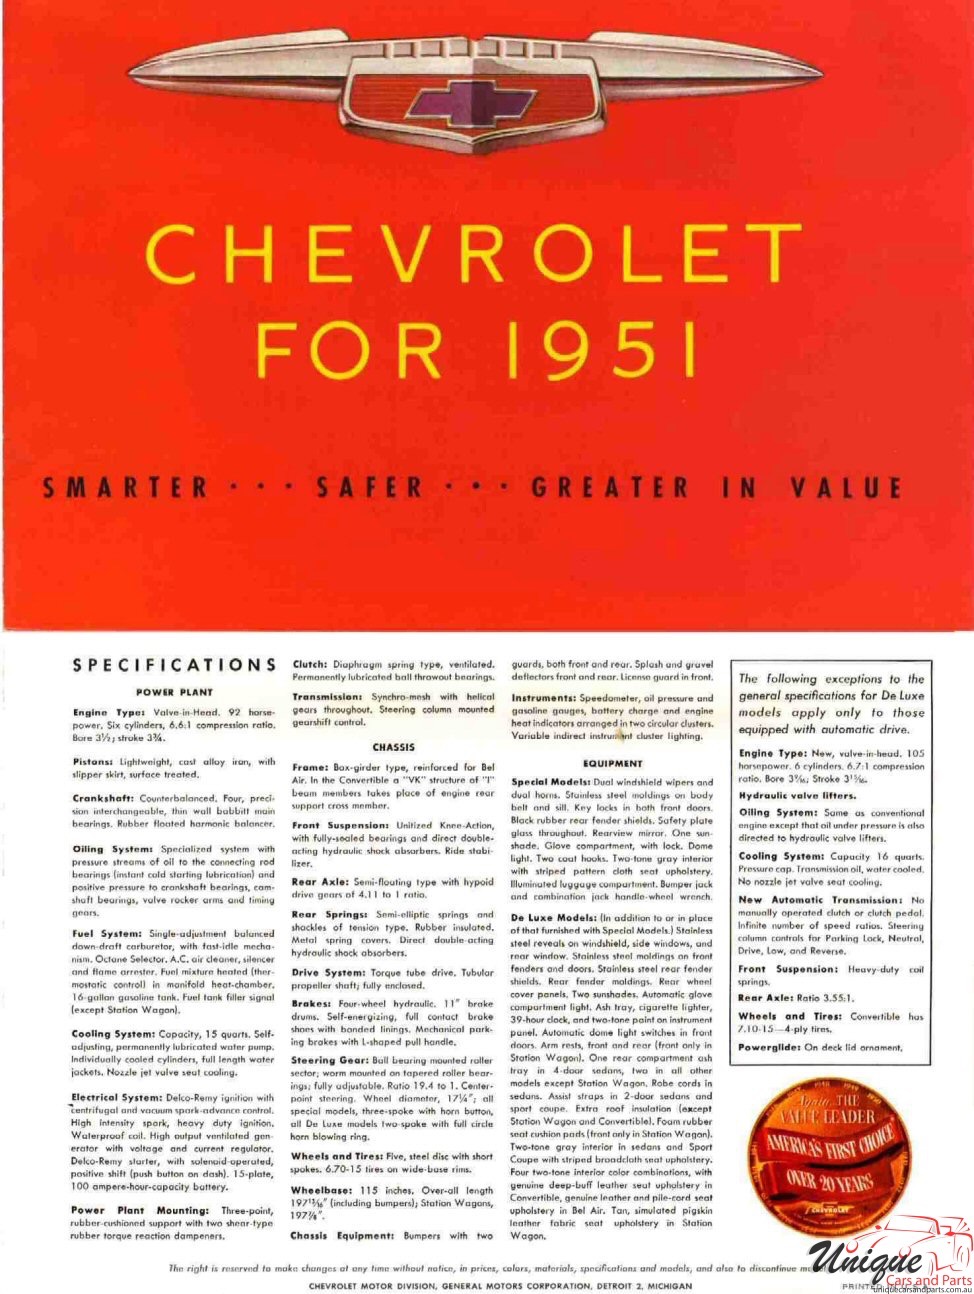 1951 Chevrolet Foldout